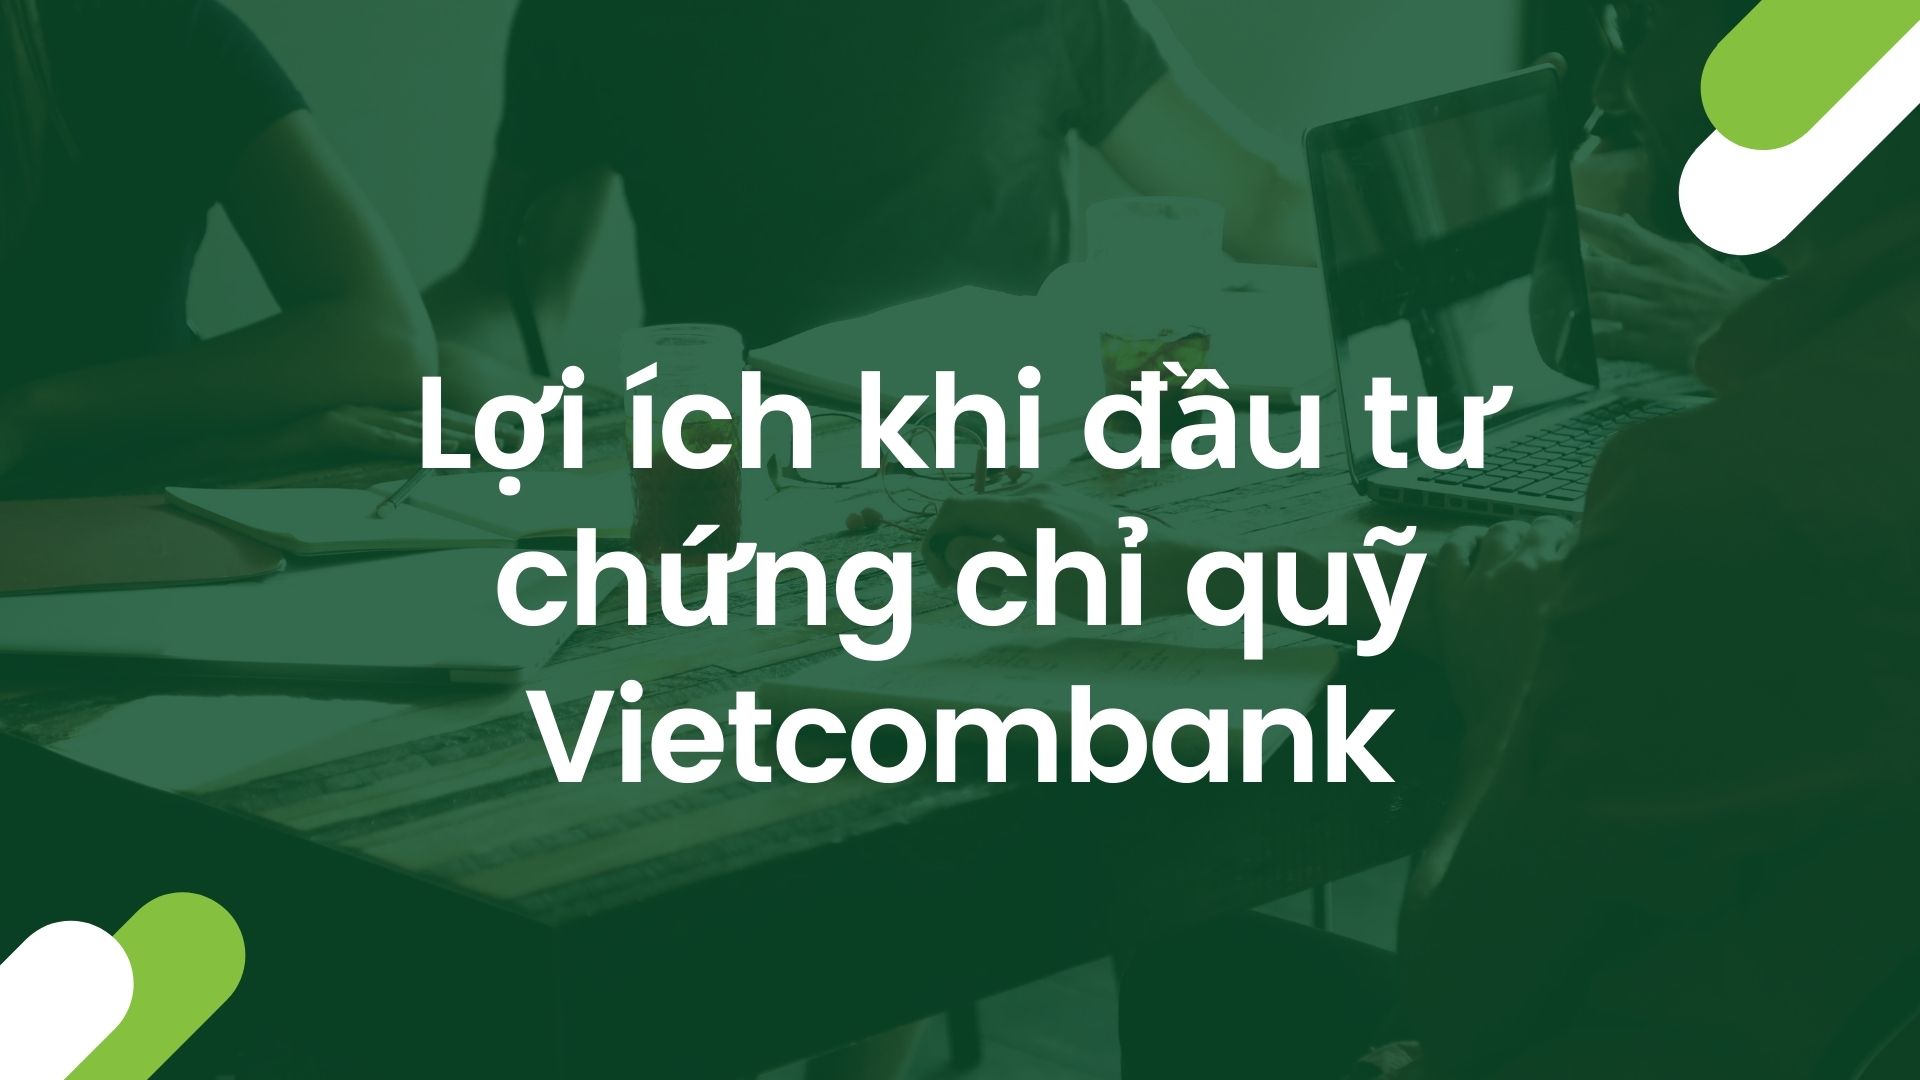 Mua chứng chỉ quỹ Vietcombank mang lại nhiều lợi ích lớn cho nhà đầu t